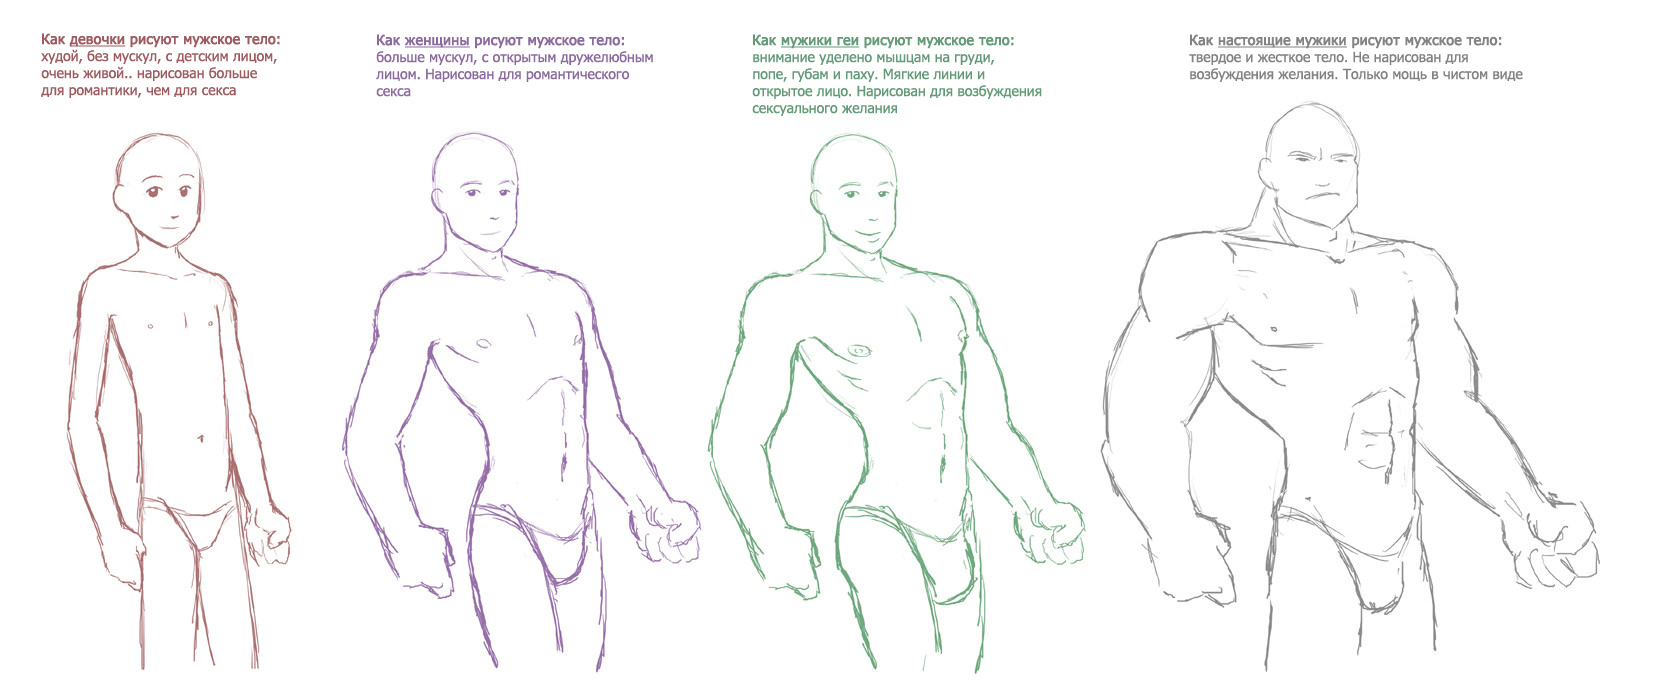 Кто и как рисует мужское тело | Пикабу